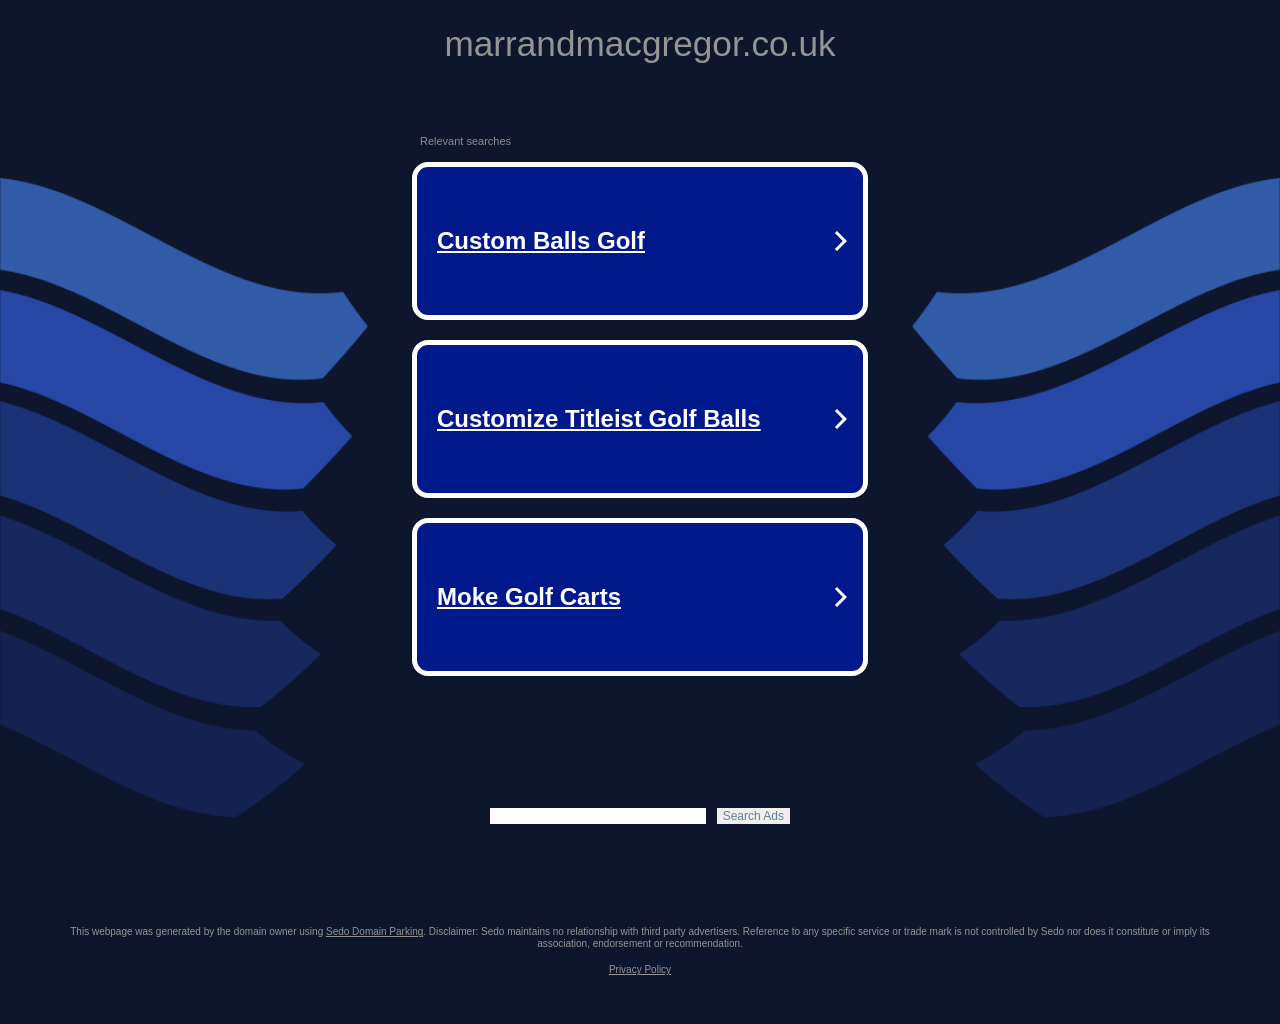 marrandmacgregor.co.uk